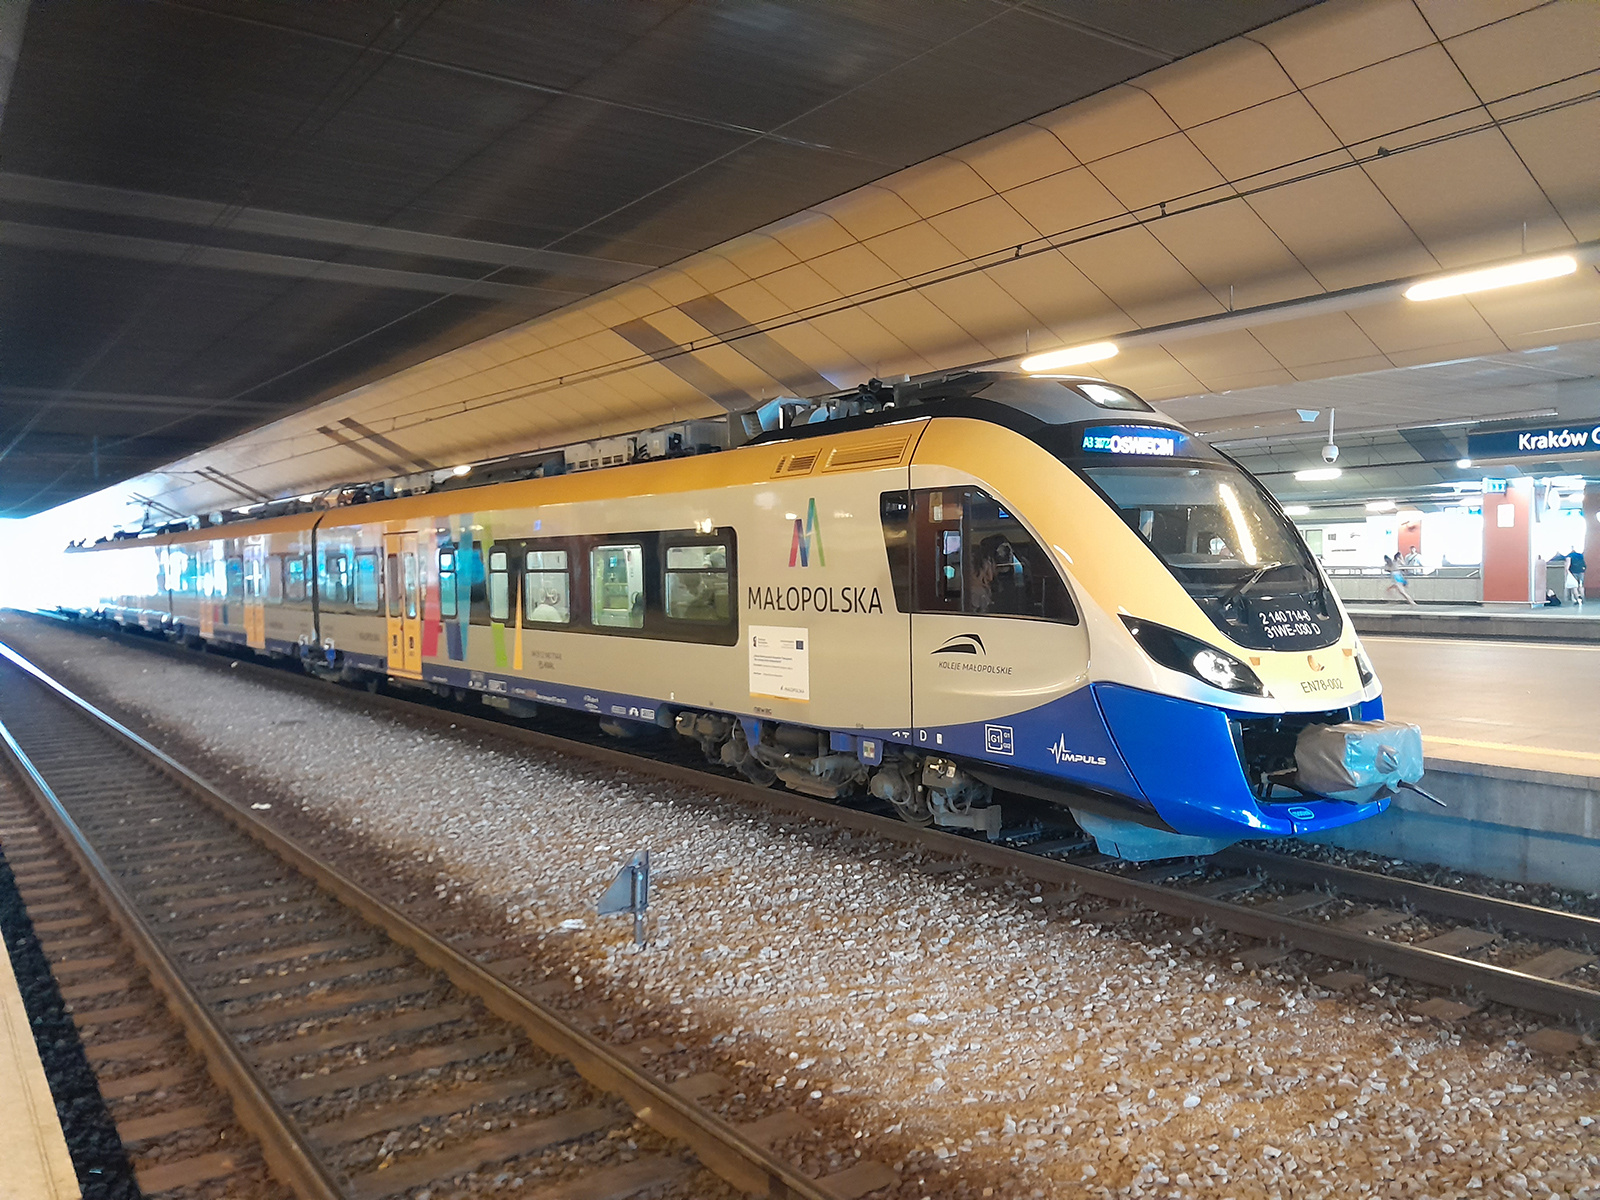 Ha elkészülnek az új nagysebességű vasúti szakaszok, akkor a PKP Intercity már nem a nyugati gyártóktól kívánja megvásárolni a nagysebességű motorvonatait, hanem a hazai iparra támaszkodva szerezné be az új járműveket. A PESA Concept 250 lesz vajon a PKP új nagysebességű vonata? 